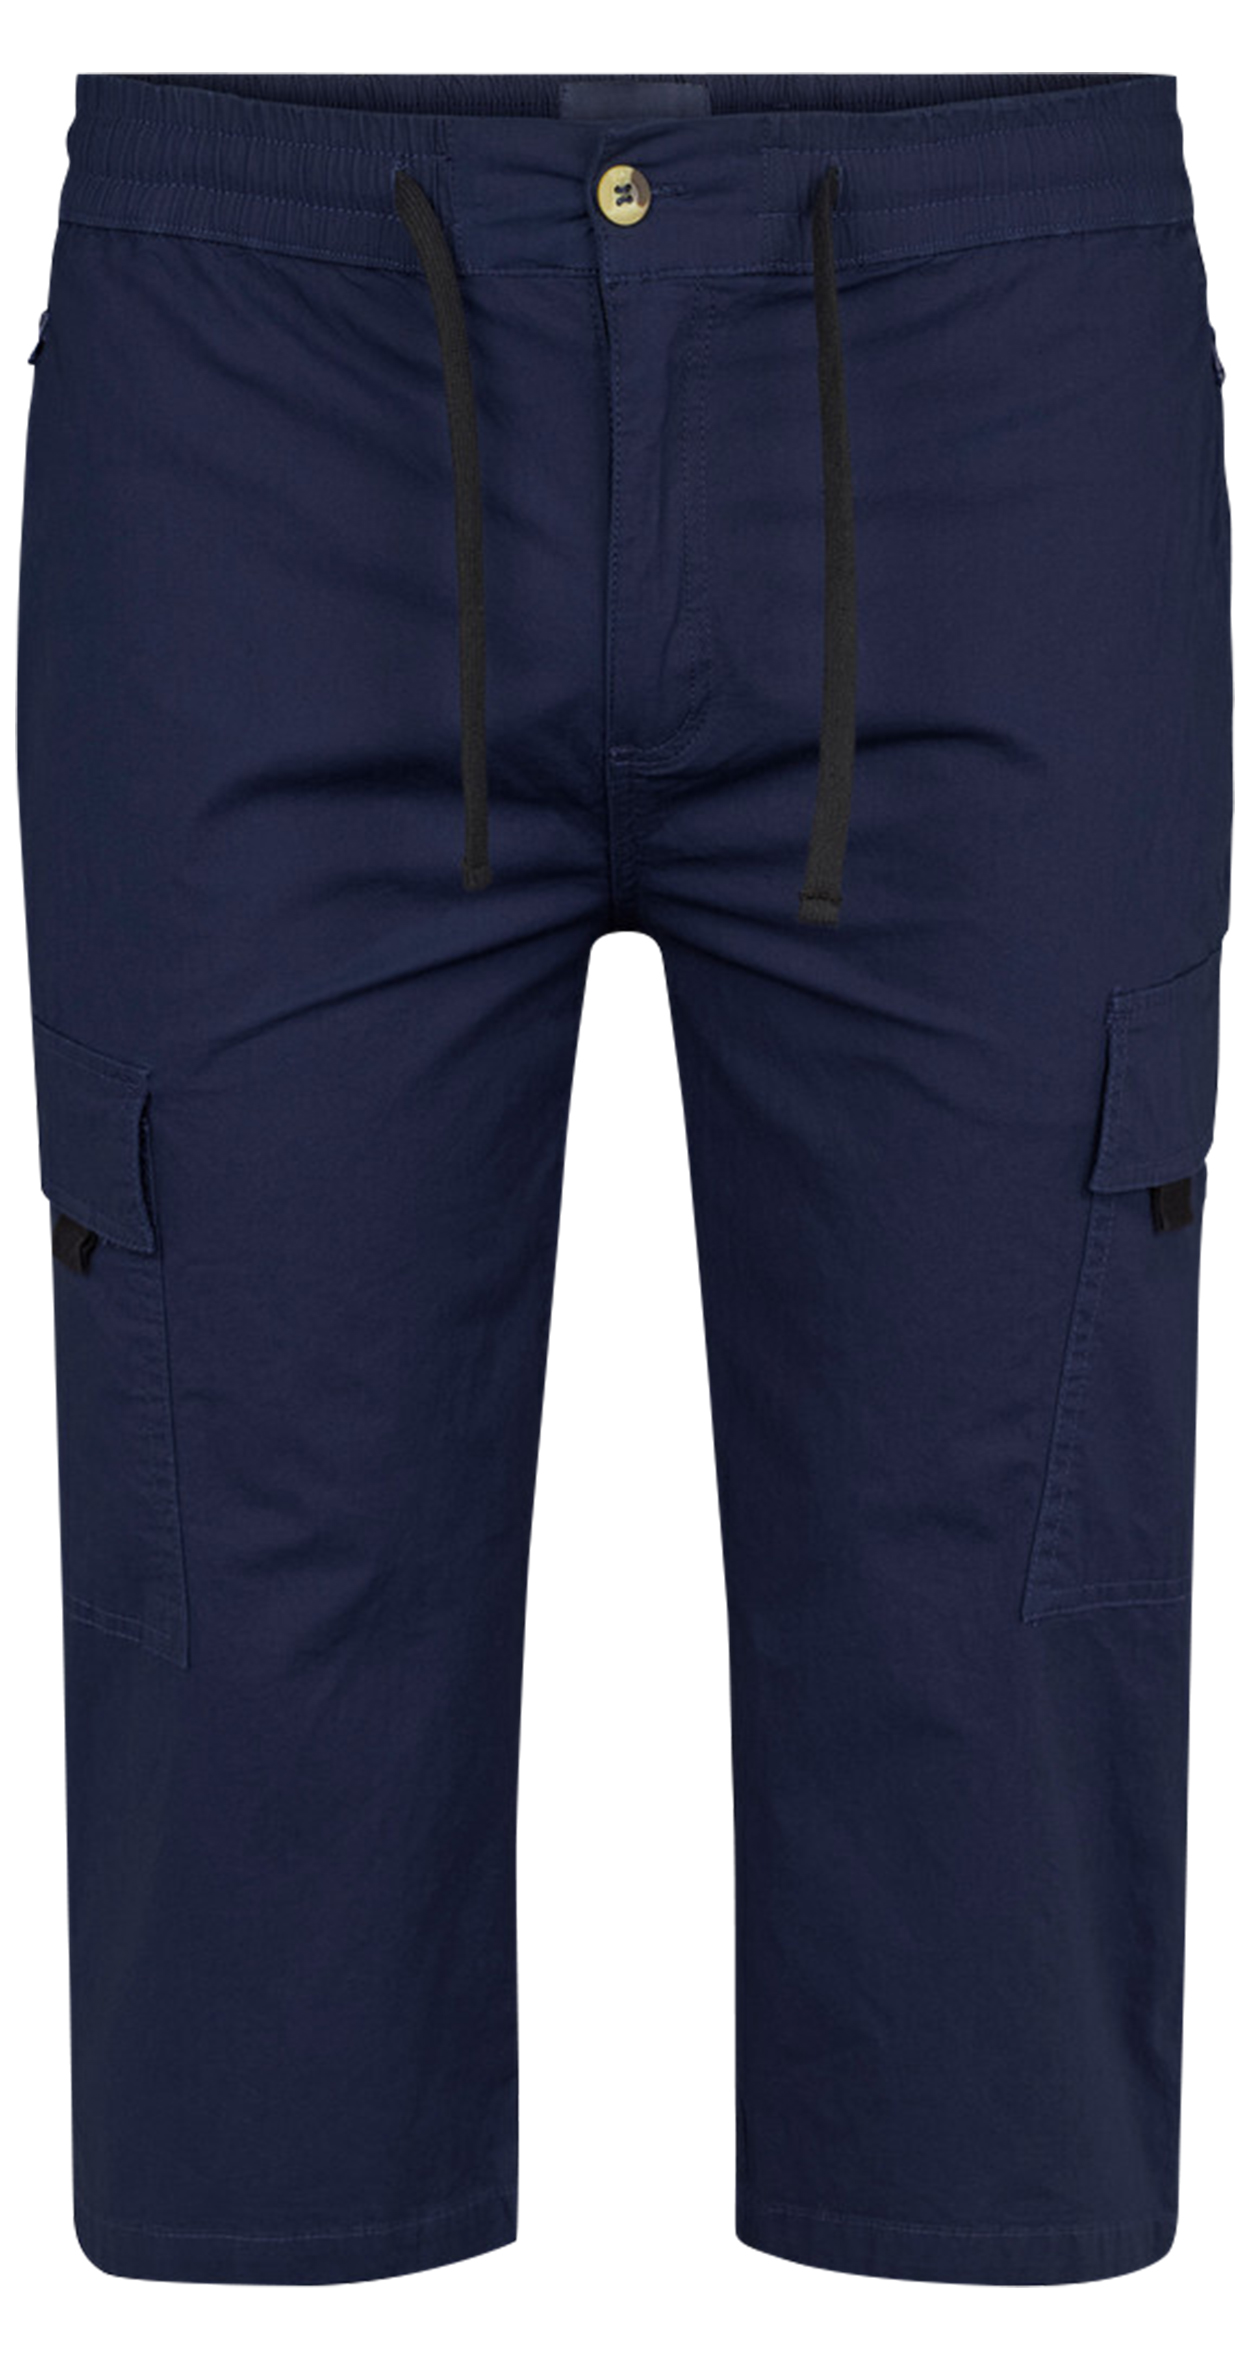 pantacourt avec liens de serrage et 6 poches north 56°4 en coton bleu marine